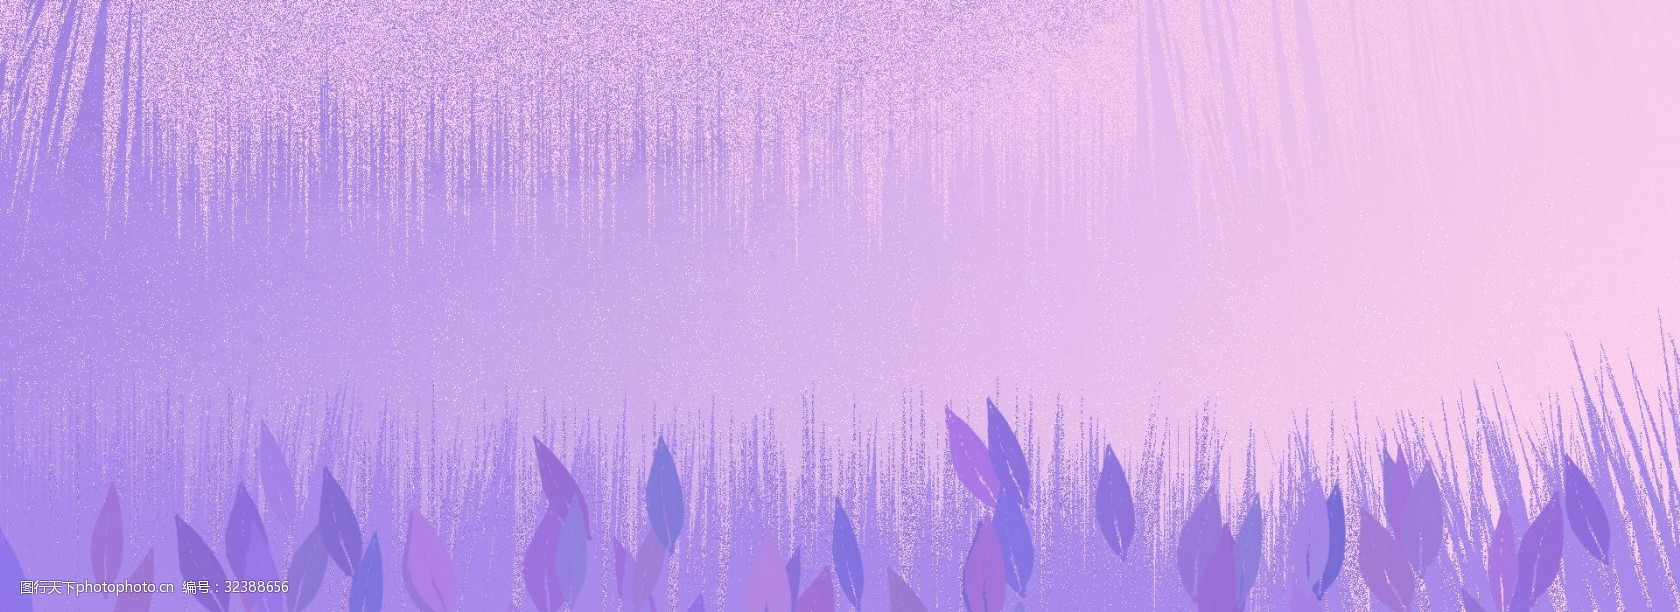 关键词:多彩背景优雅唯美紫色背景 多彩 唯美 高贵紫色 植物 叶子 点